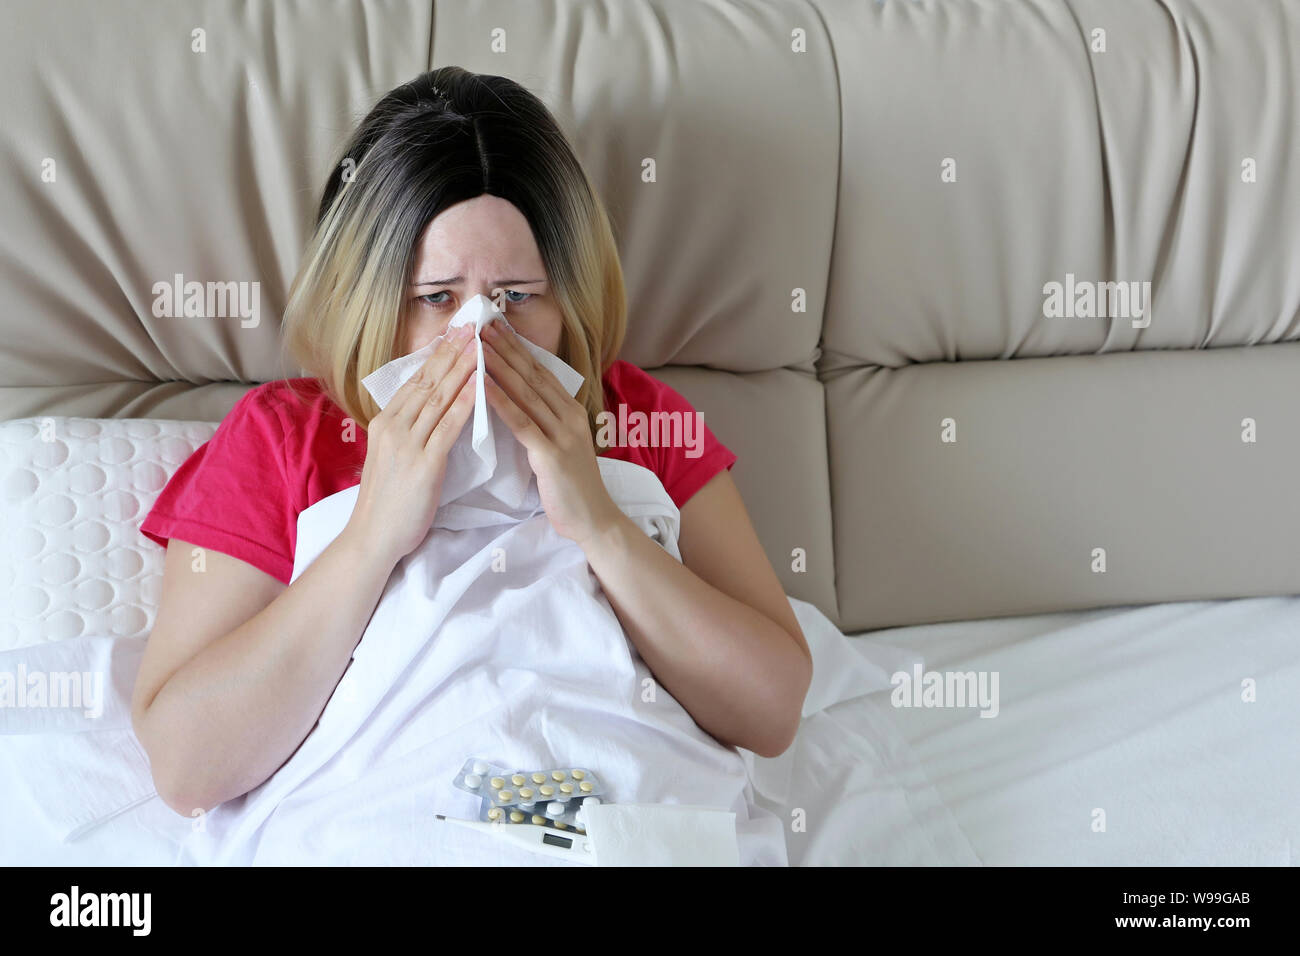 Frau, die ihre Nase weht in ein Taschentuch in einem Bett sitzen. Unglückliche Mädchen leiden, laufende Nase, Konzept der Kranken zu Hause, Erkältungen und Grippe, Fieber Stockfoto